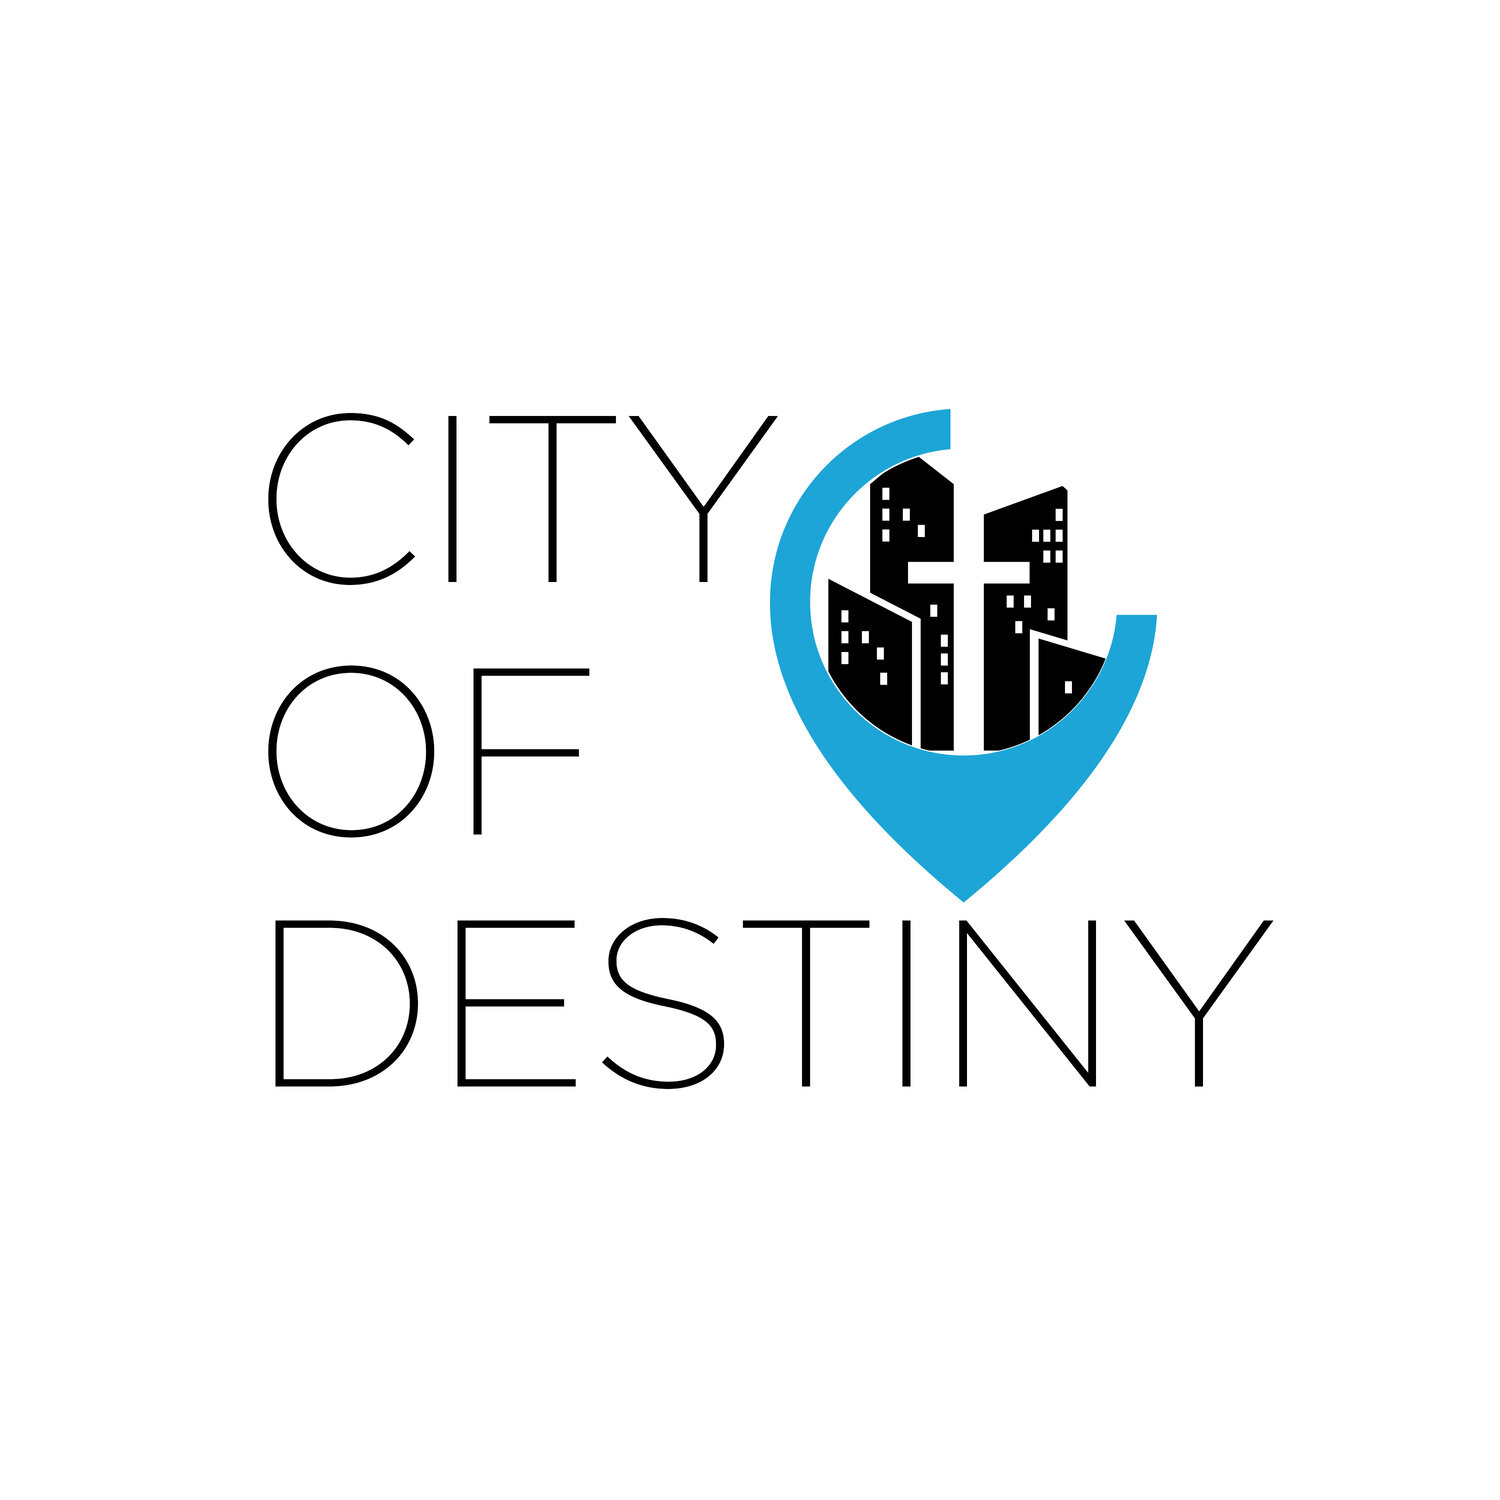 New Destiny Christian Center